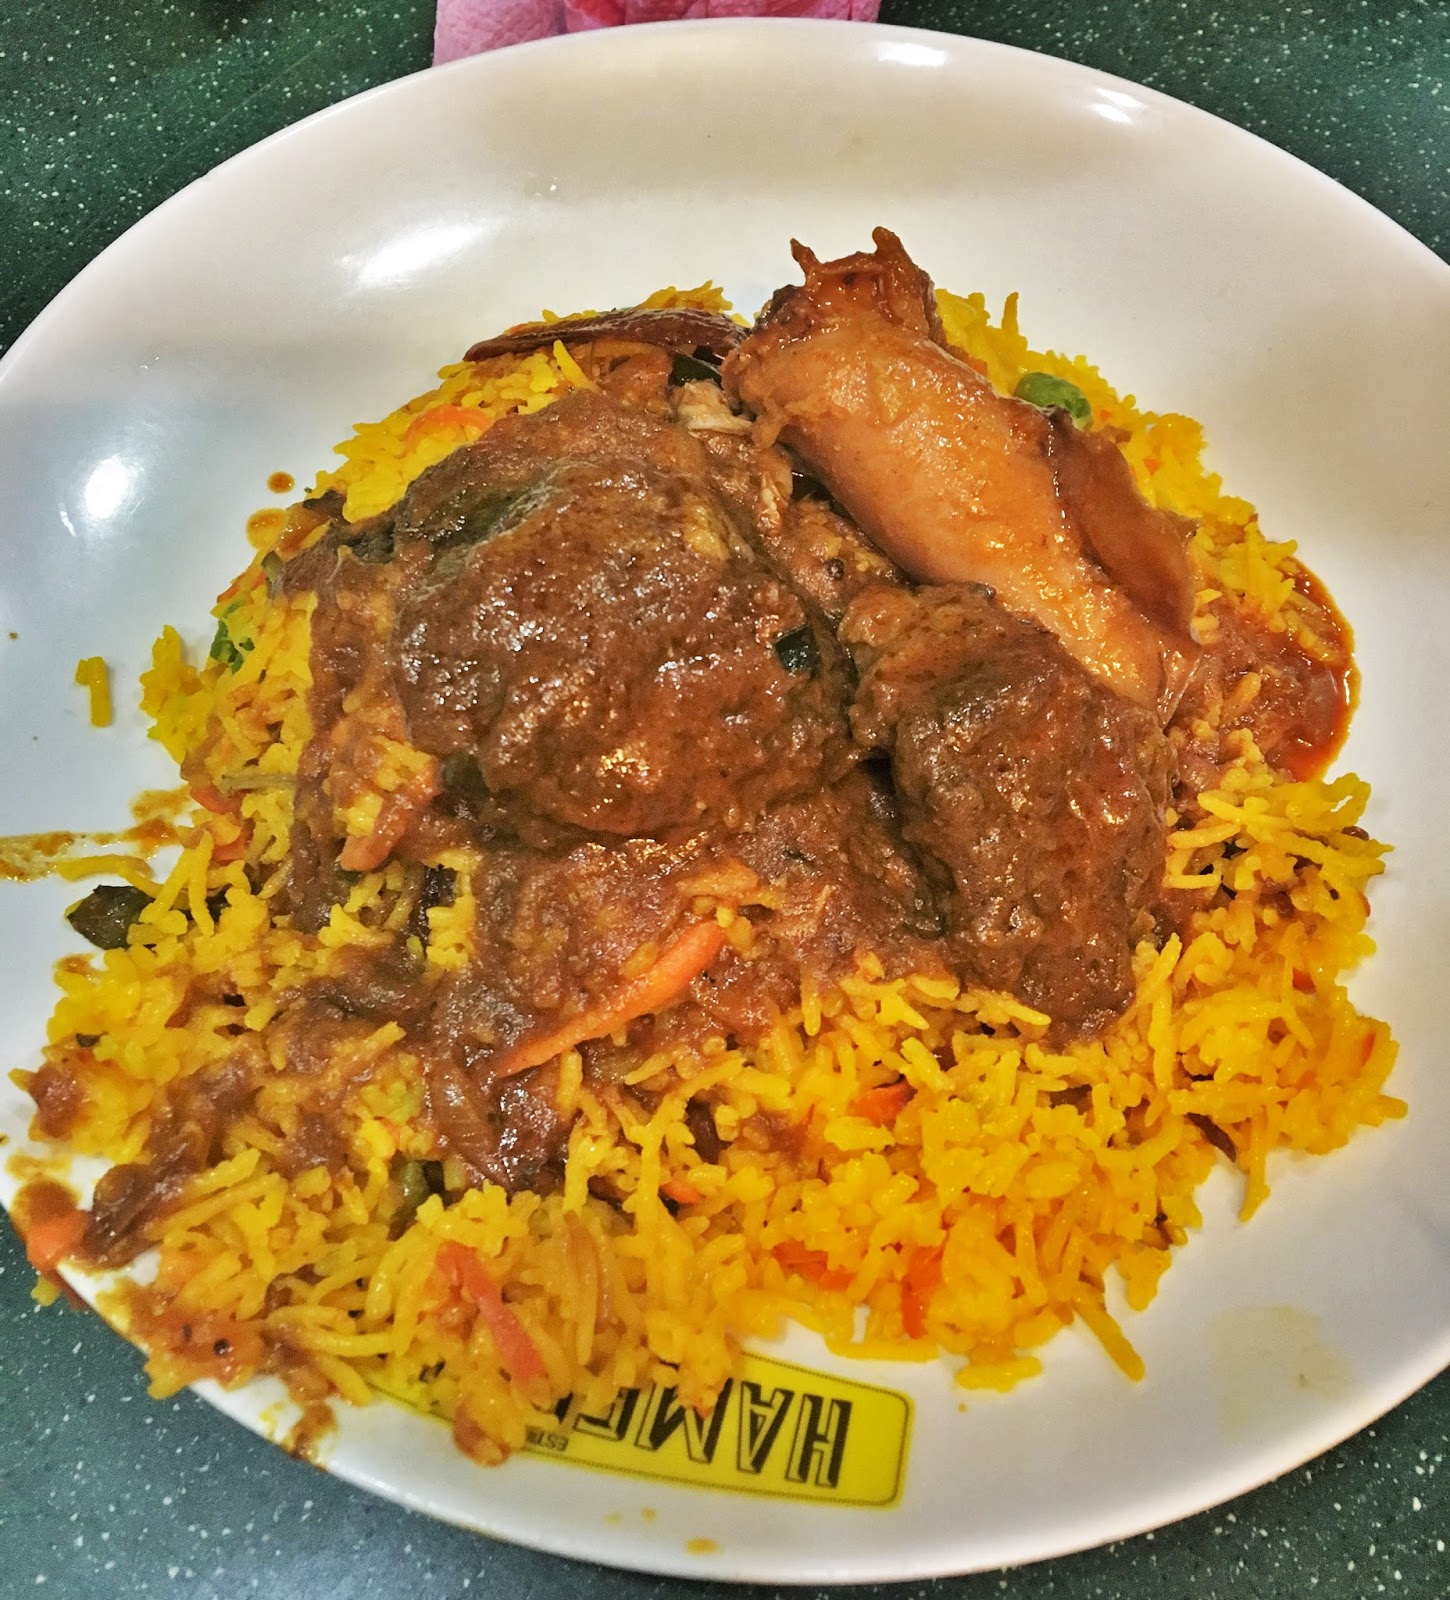 Short Vacay In Penang: Have Chezilious Nan & Superb Beriani At Hameediyah Tandoori House Restaurant, Penang